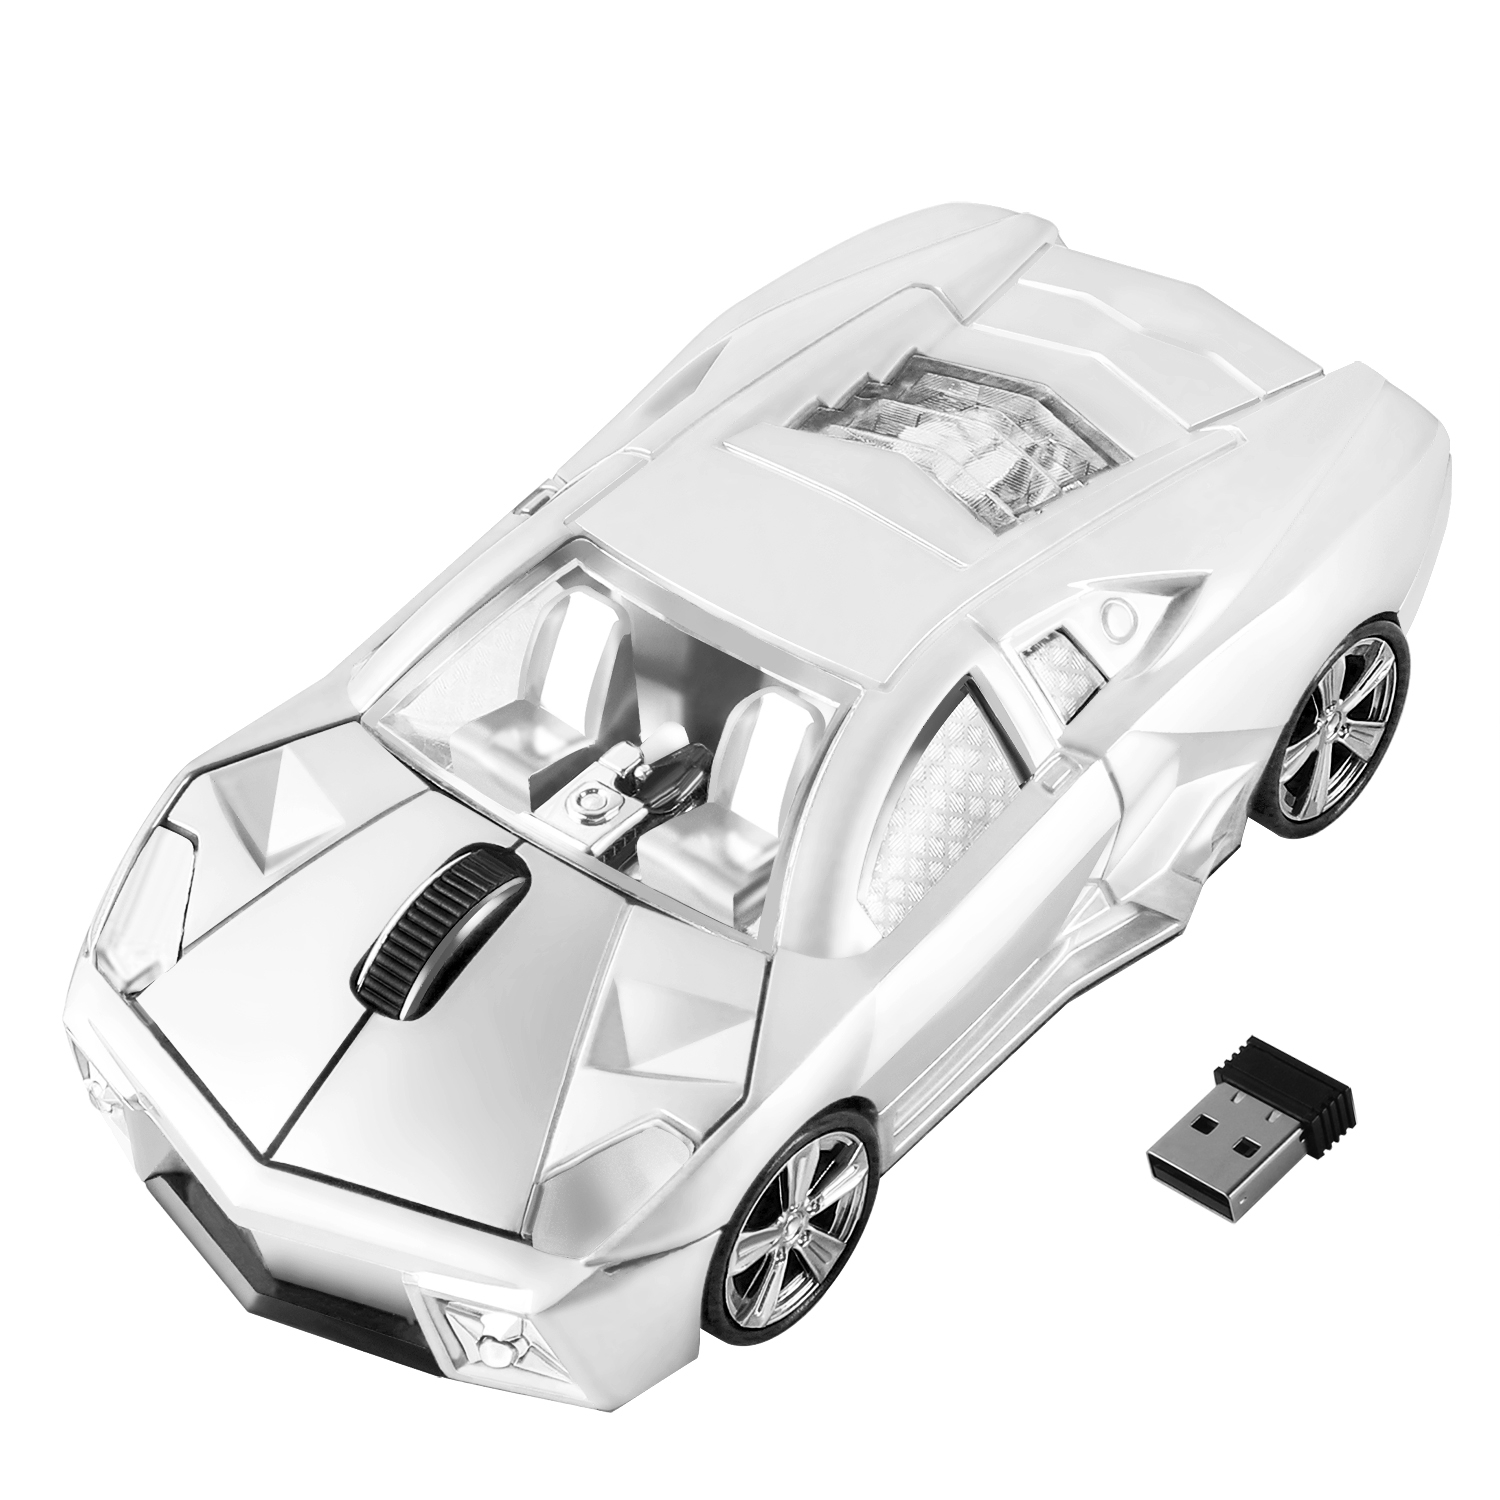 2-4G-무선-마우스-인체공학-스포츠-자동차-디자인-게임-Mause-1600-DPI-USB-광학-어린이-선물 (10)